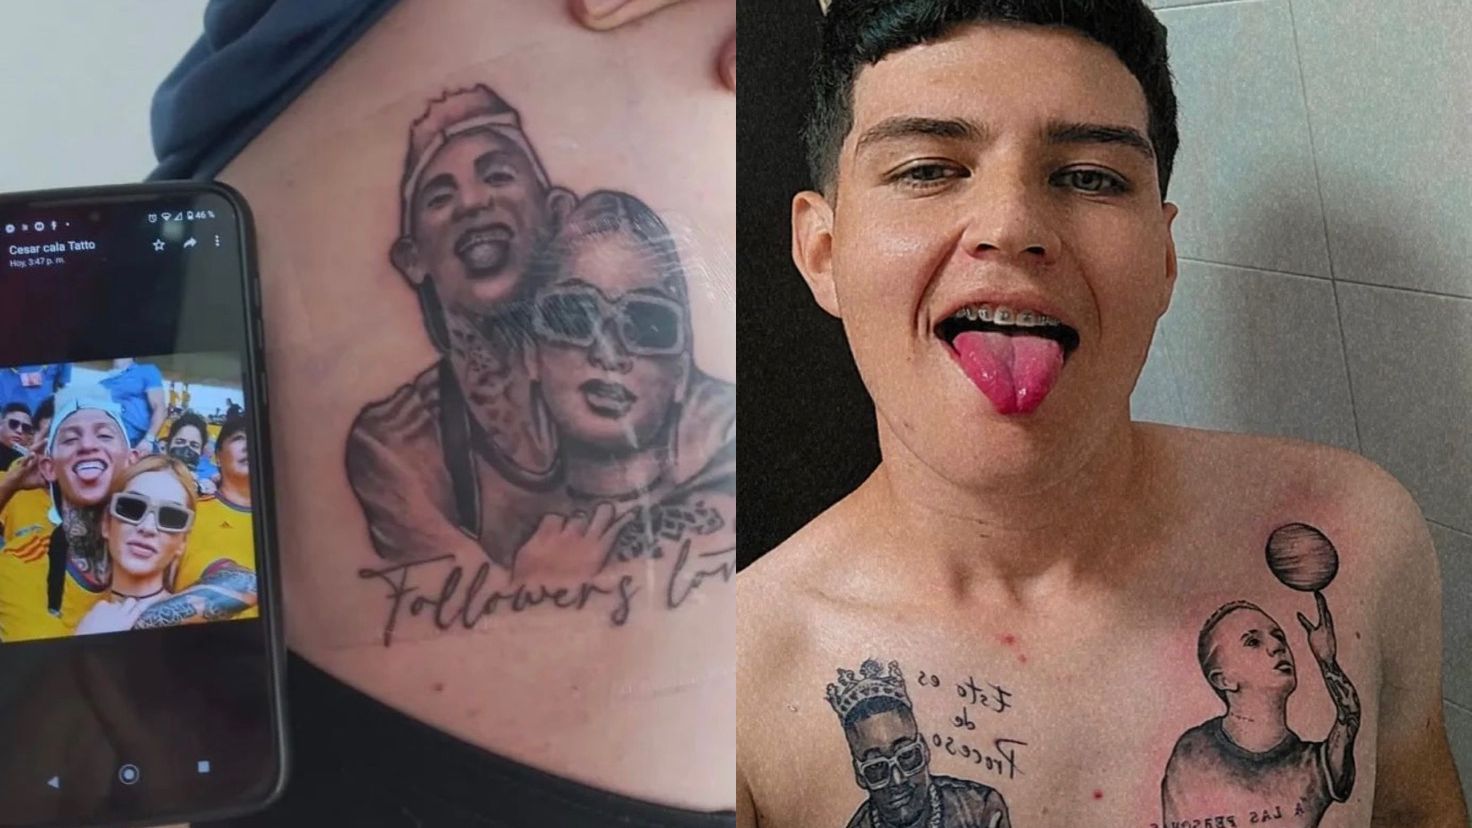 Voglio aiutare molte persone»: Edwar Ríos, il giovane che ha tatuato il  volto di diversi influencer - Infobae